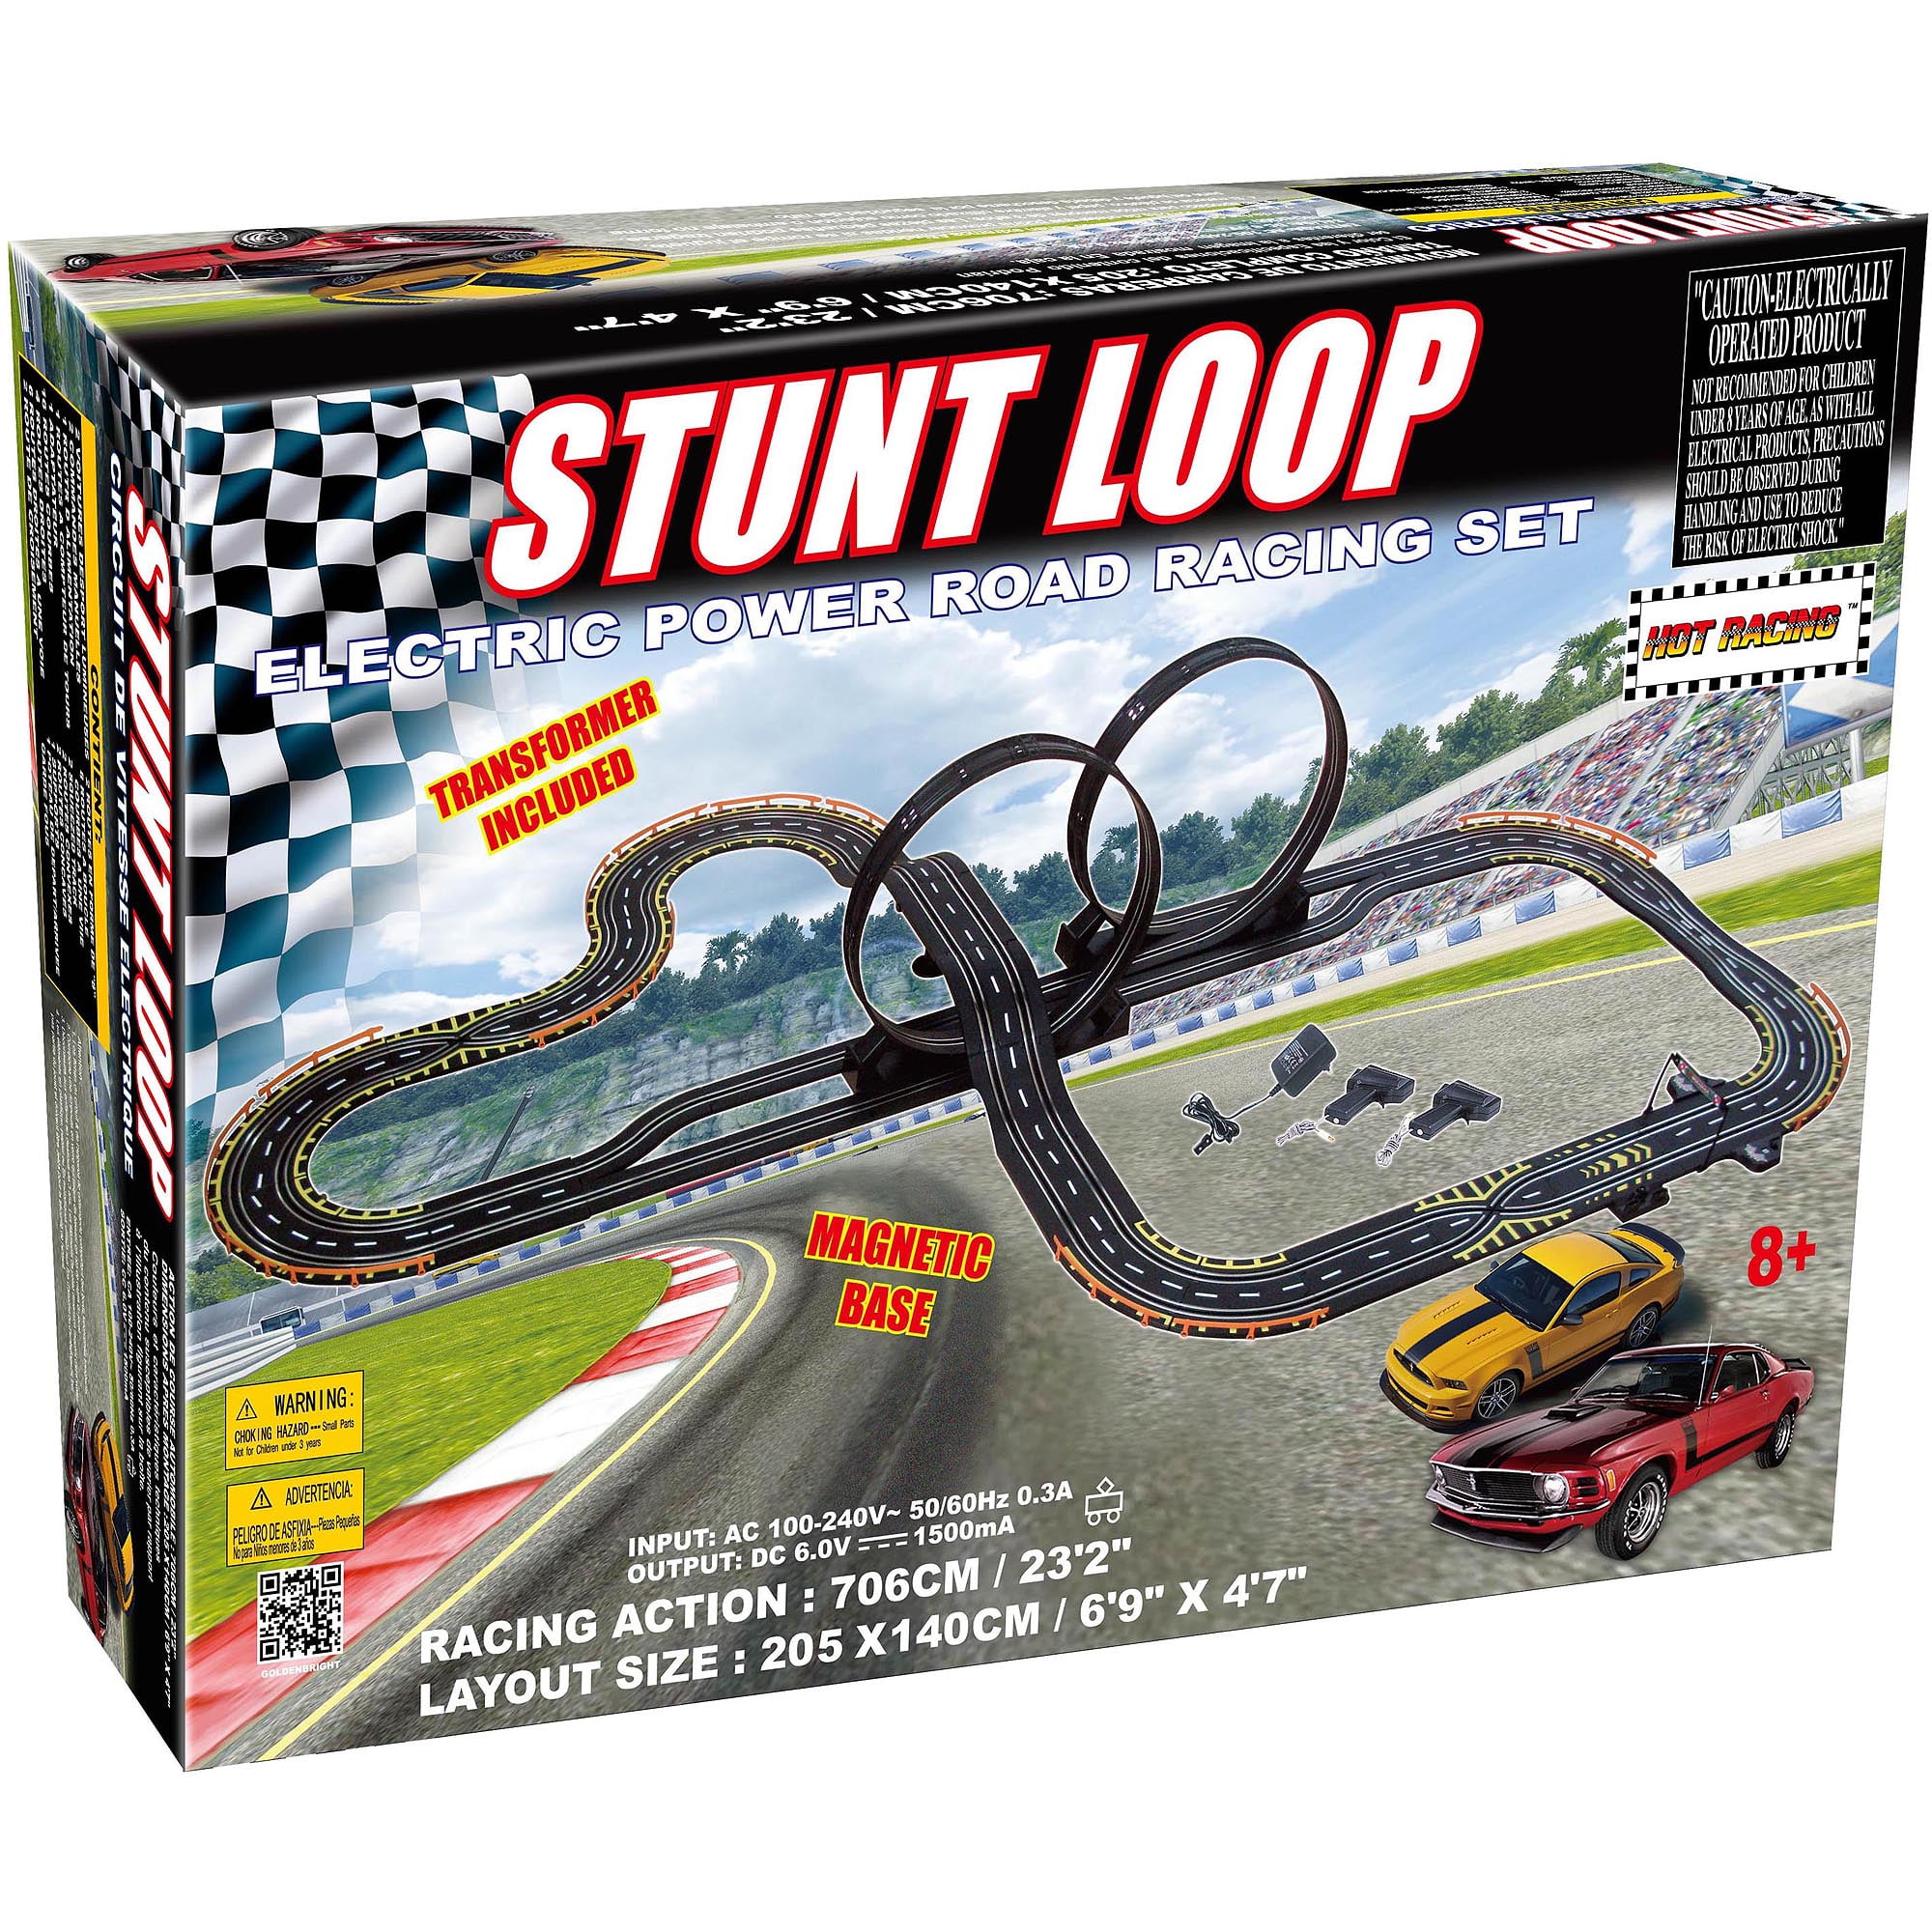 Electric Power Stunt Loop Road Racing 